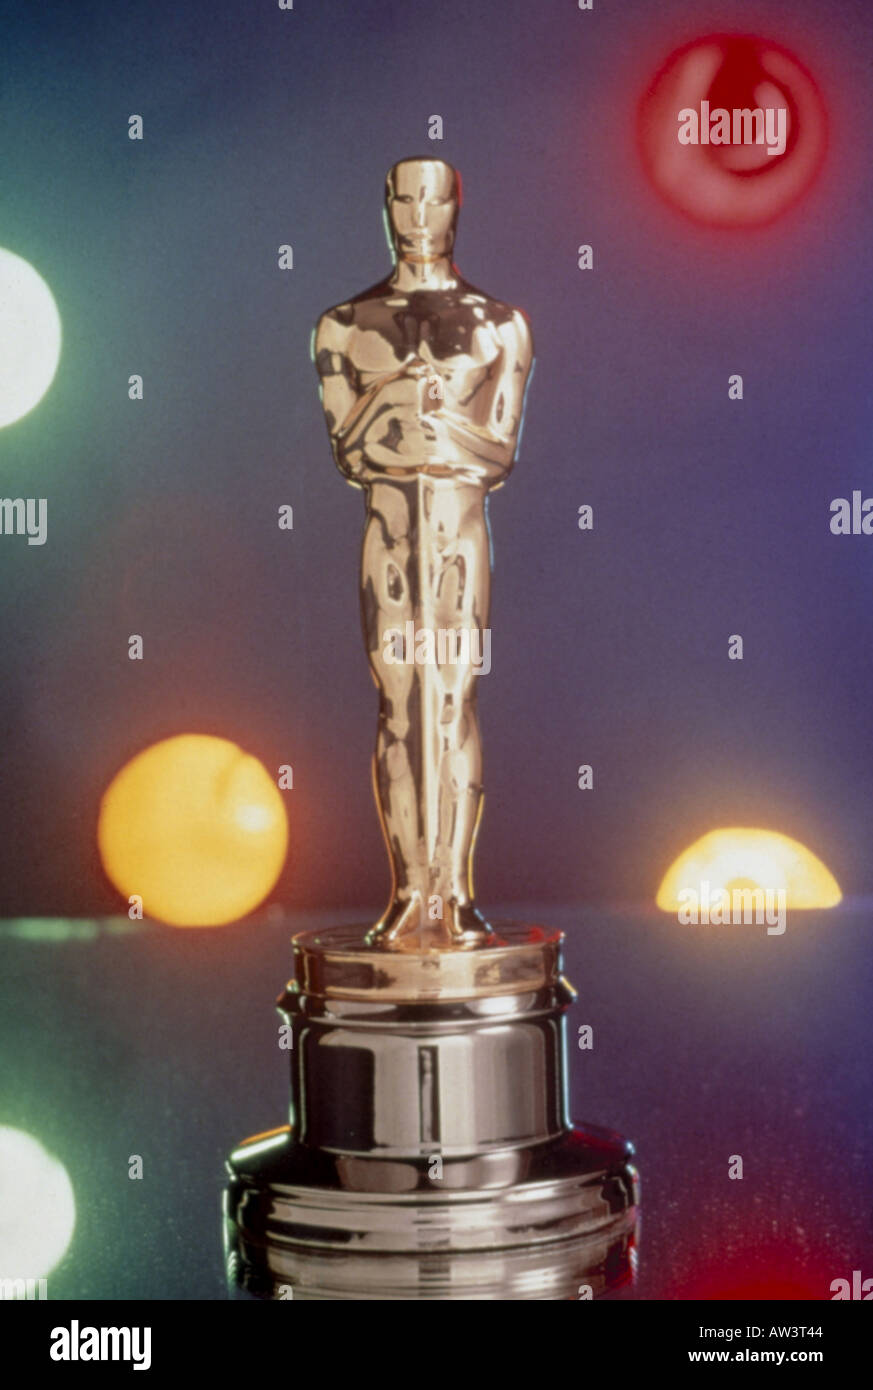 OSCAR-Statuette berühmten Film Award von der American Academy of Motion Picture Arts and Sciences - siehe Beschreibung unten Stockfoto